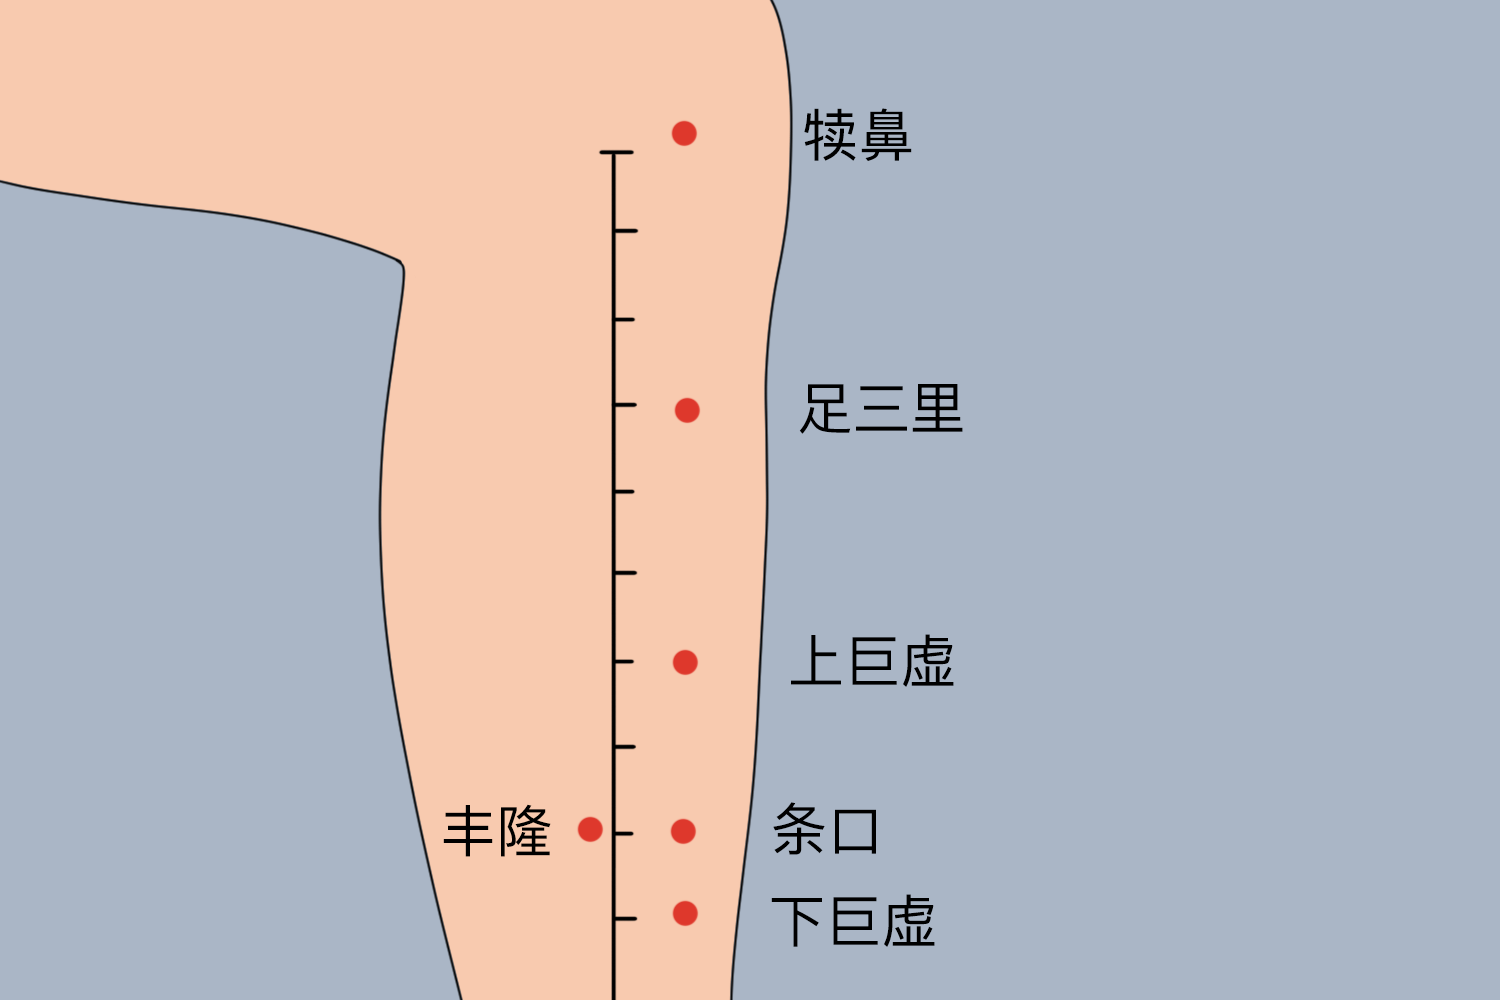 脾胃贴贴敷于足三里穴位置图